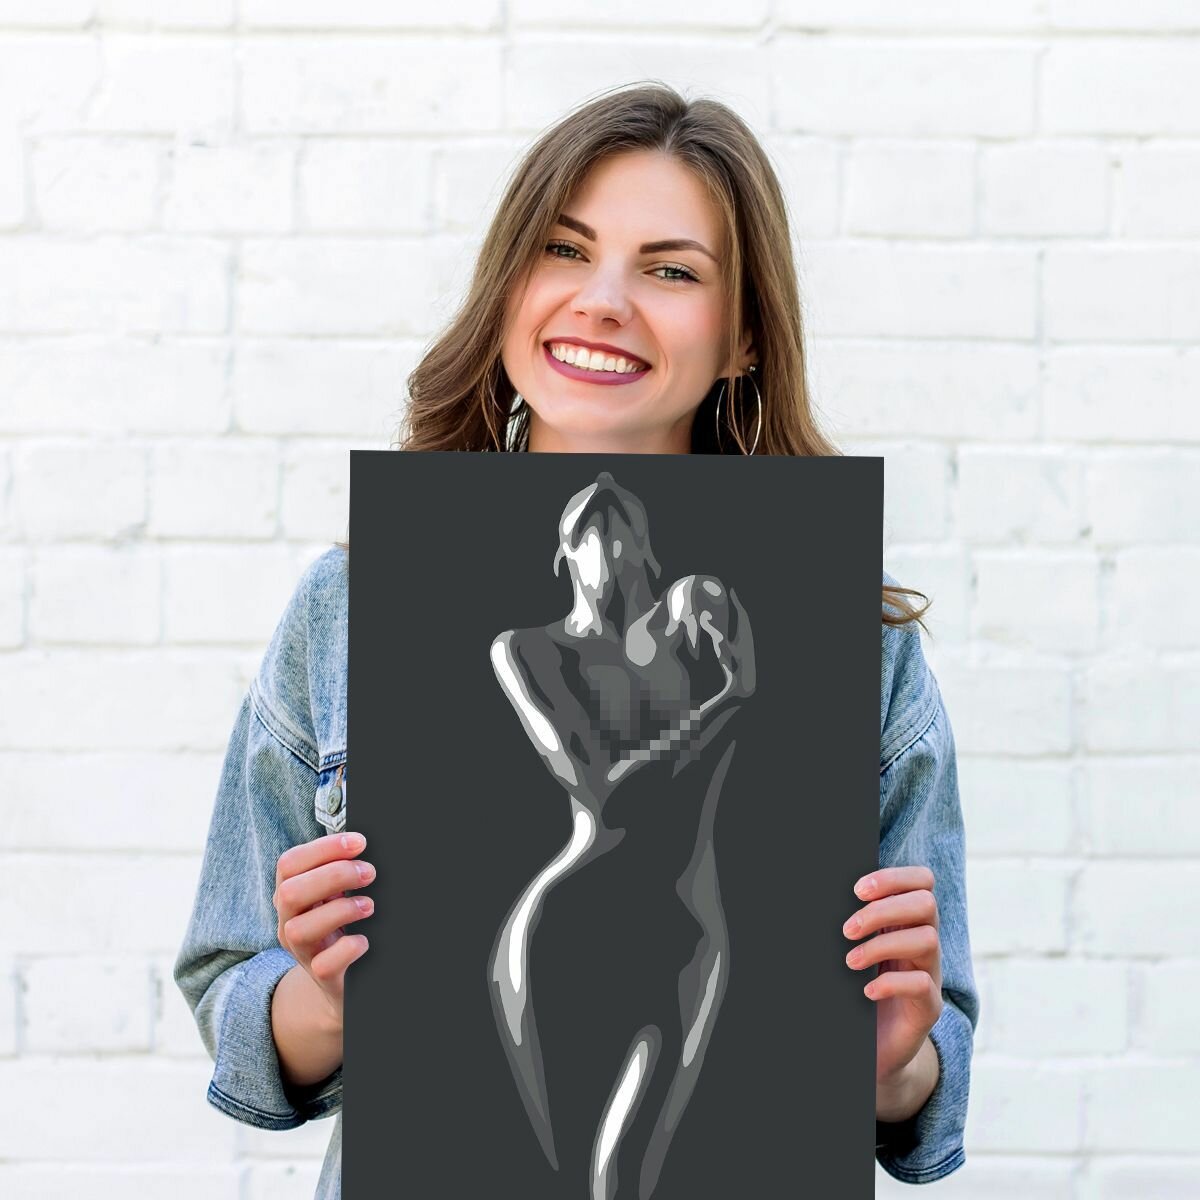 Постер А3. Девушка в темноте. Матовая фотобумага